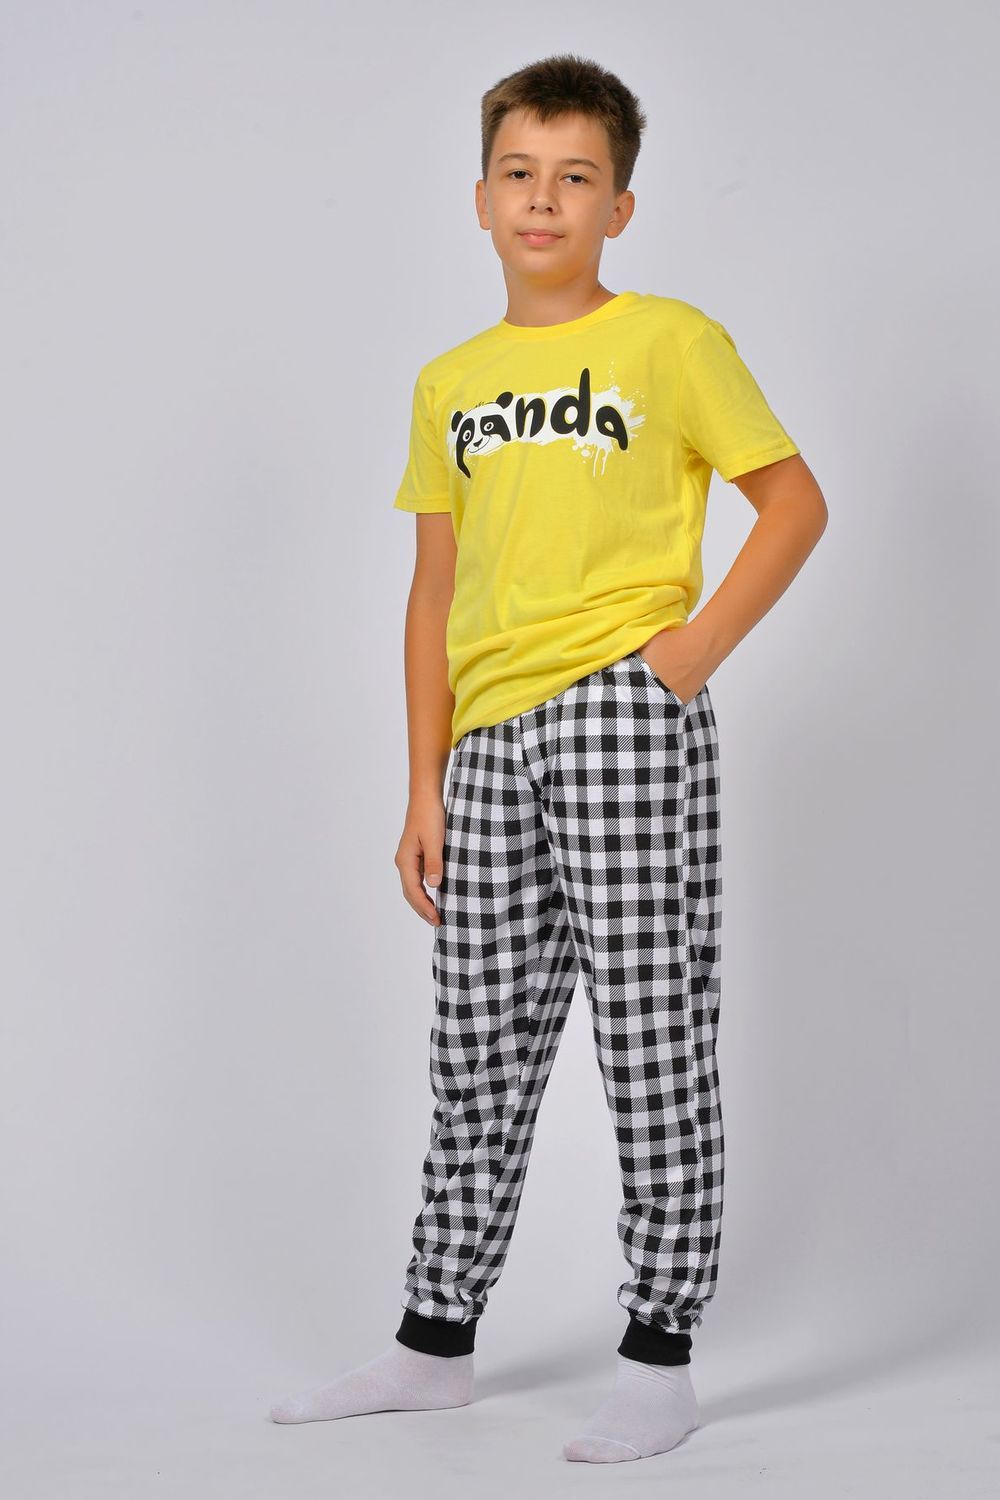 Пижама для мальчика 92212 - желтый/черная клетка